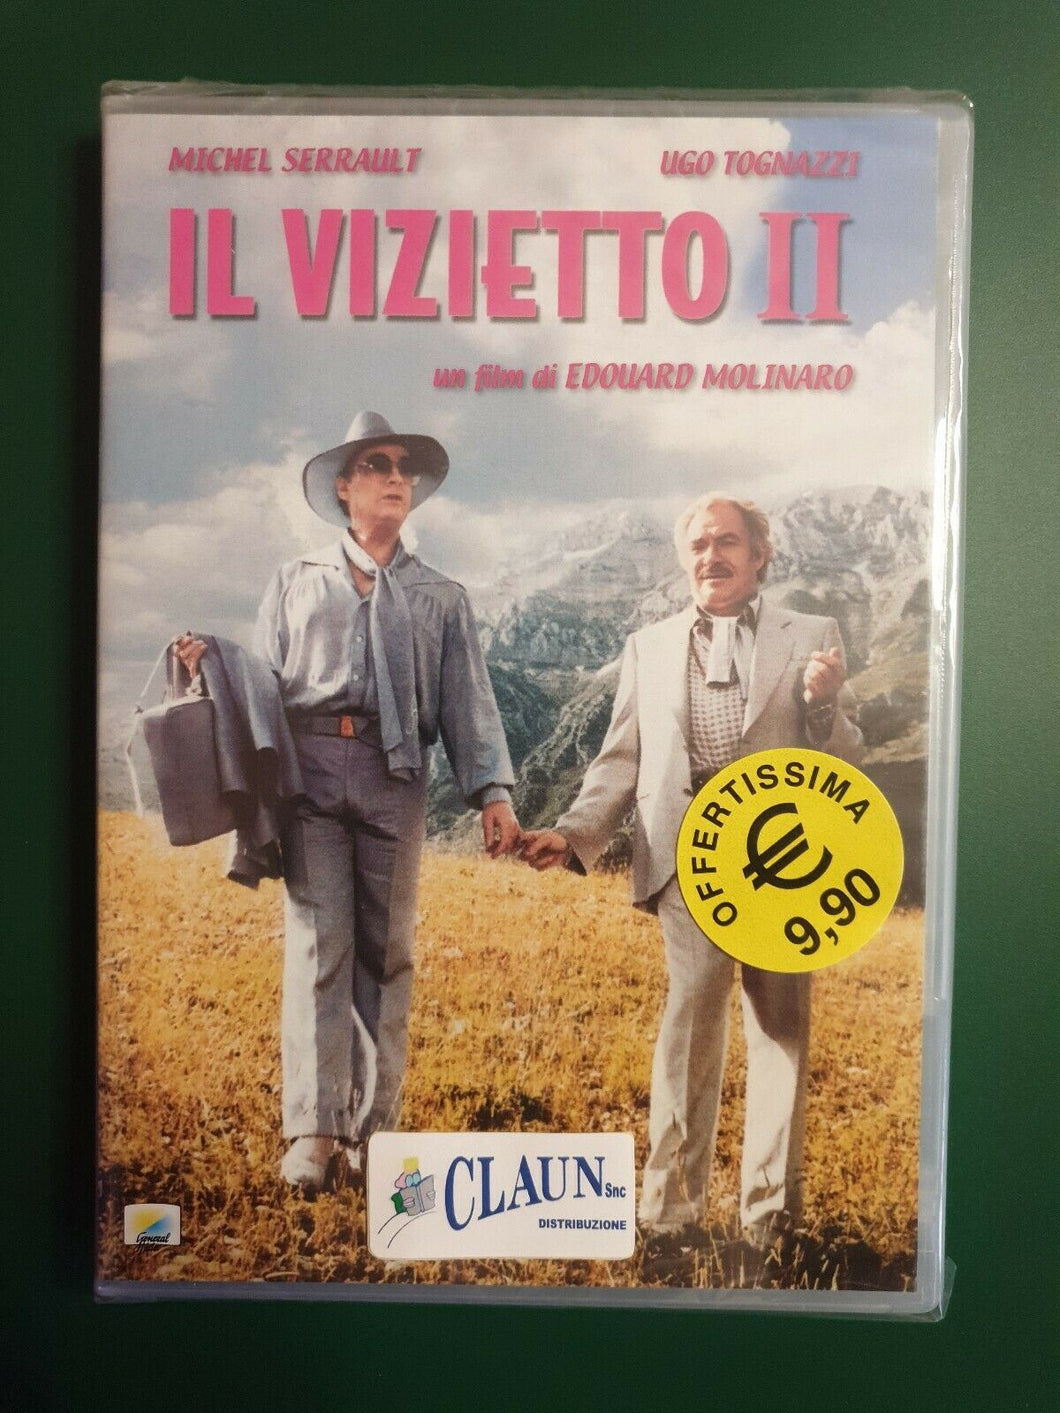 Il vizietto II (1980) DVD Nuovo